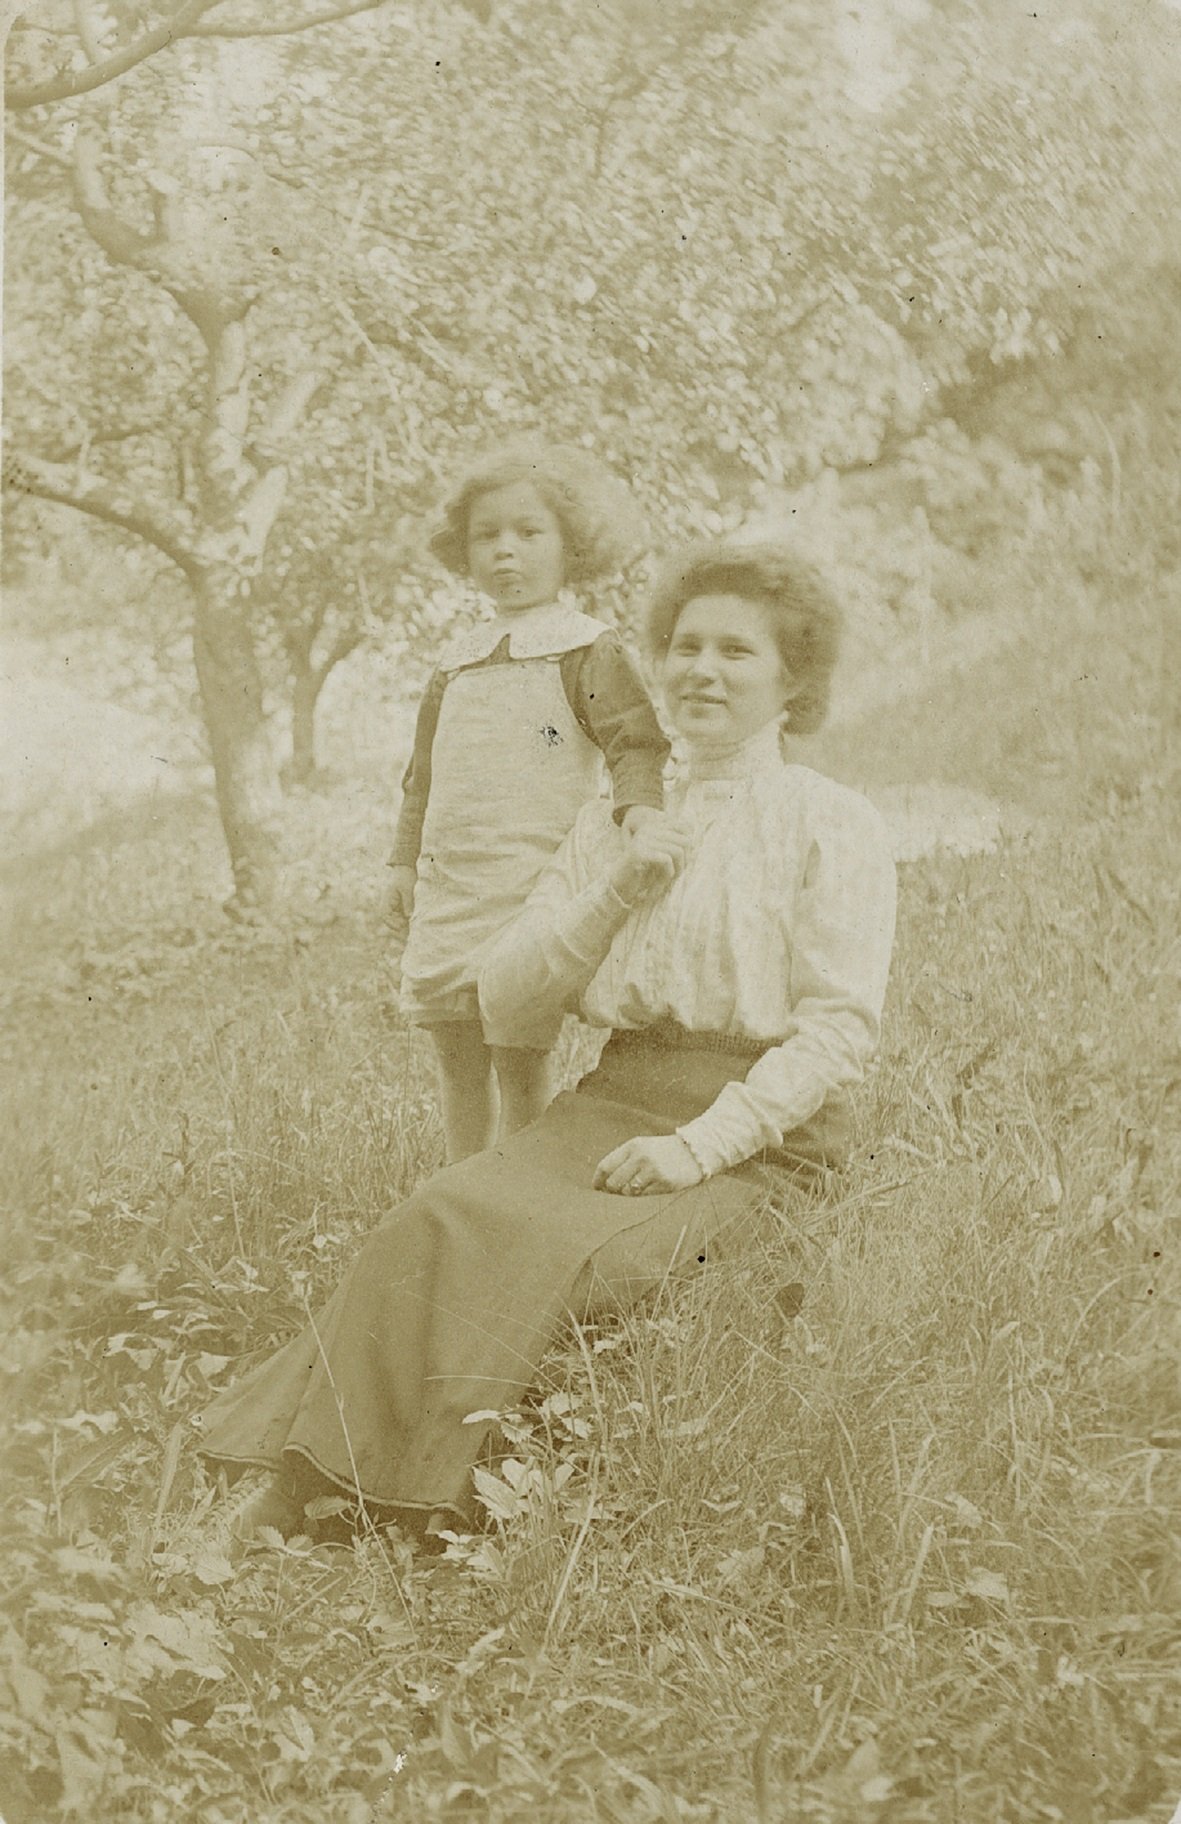 Raimund von Hofmannsthal mit einer jungen Frau auf einer Wiese (Freies Deutsches Hochstift / Frankfurter Goethe-Museum CC BY-NC-SA)